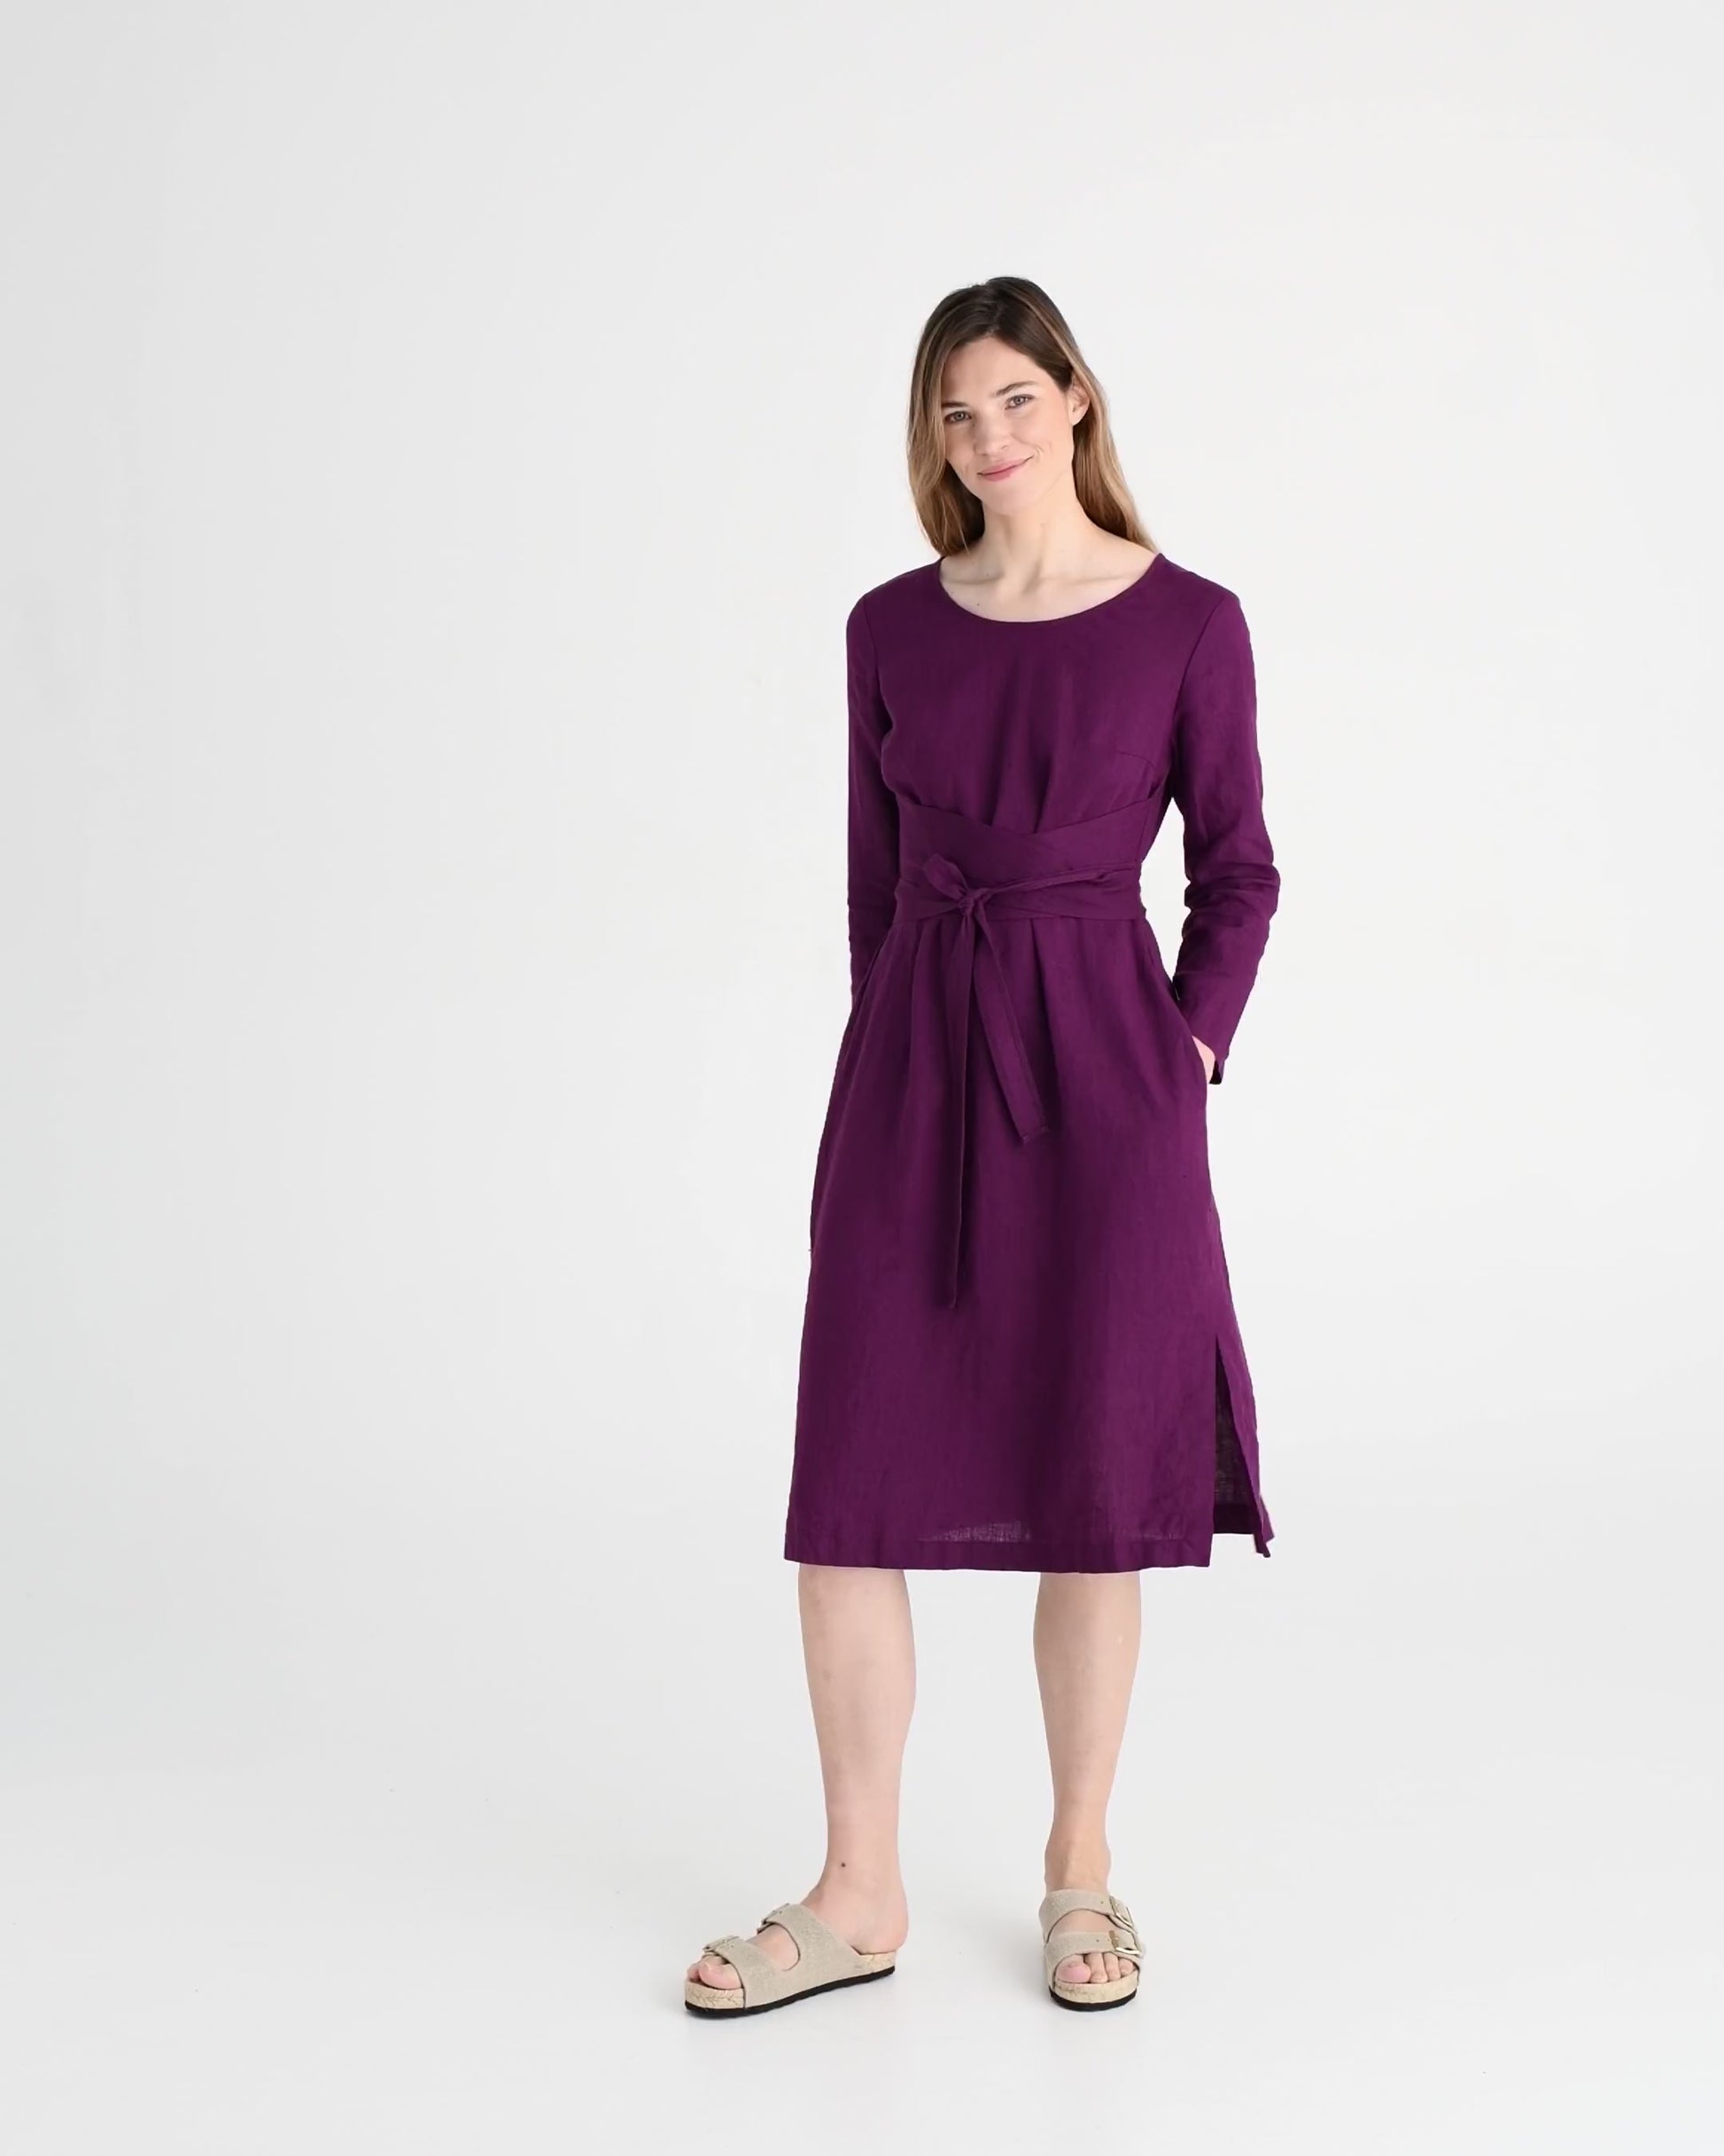 Long sleeve linen wrap dress BIEI in Royal purple - MagicLinen